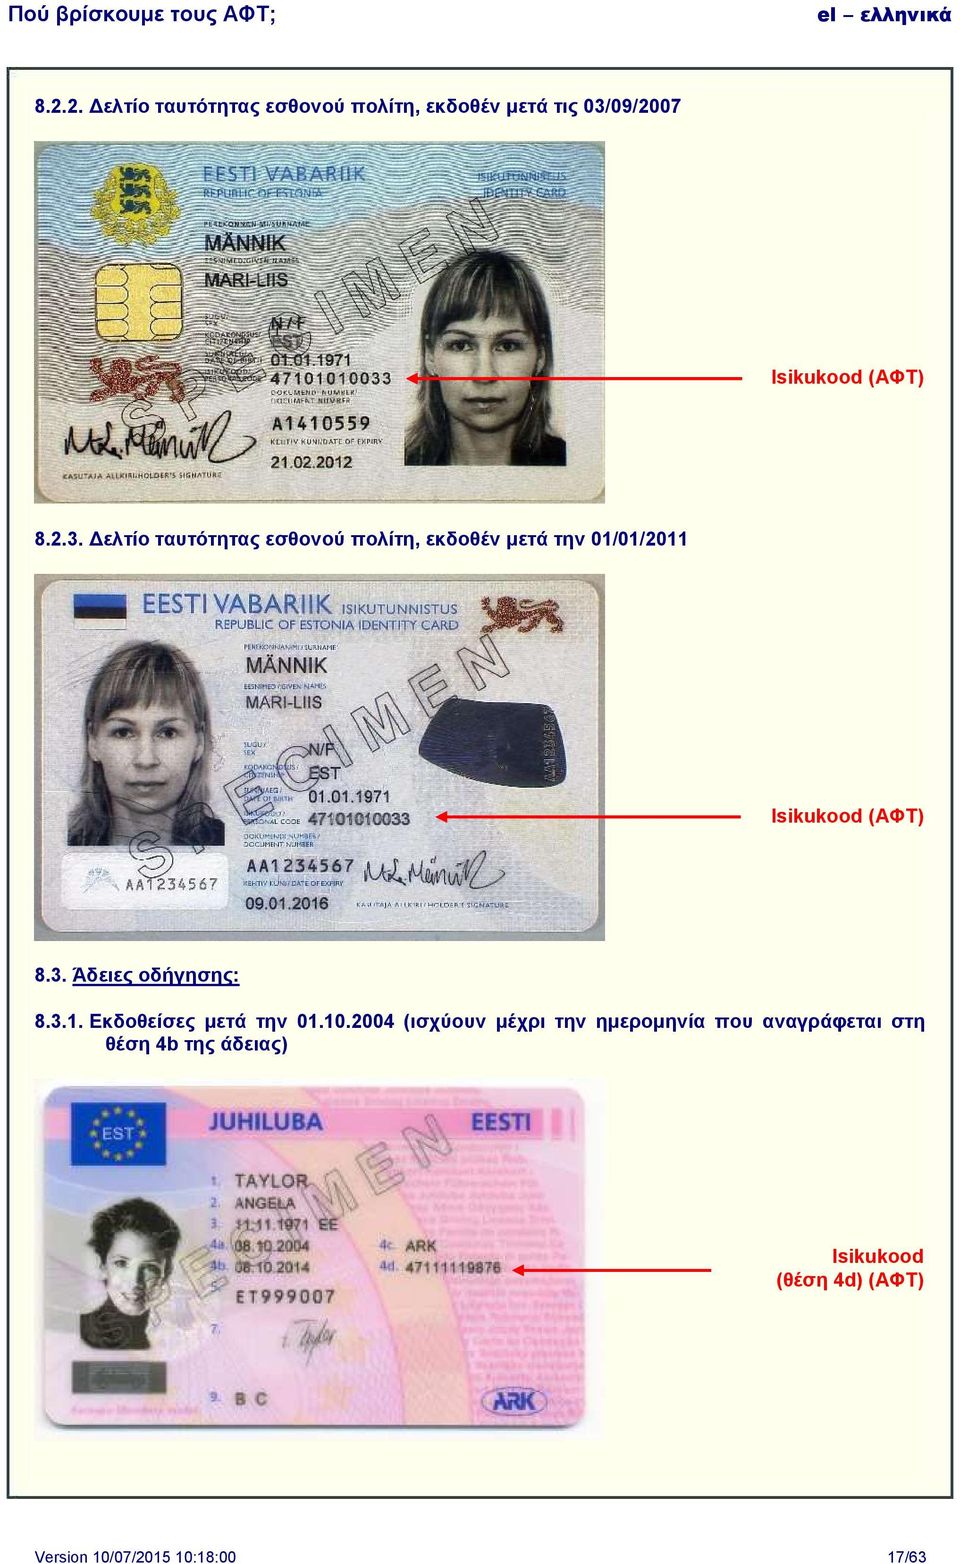 Δελτίο ταυτότητας εσθονού πολίτη, εκδοθέν μετά την 01/01/2011 Isikukood () 8.3.